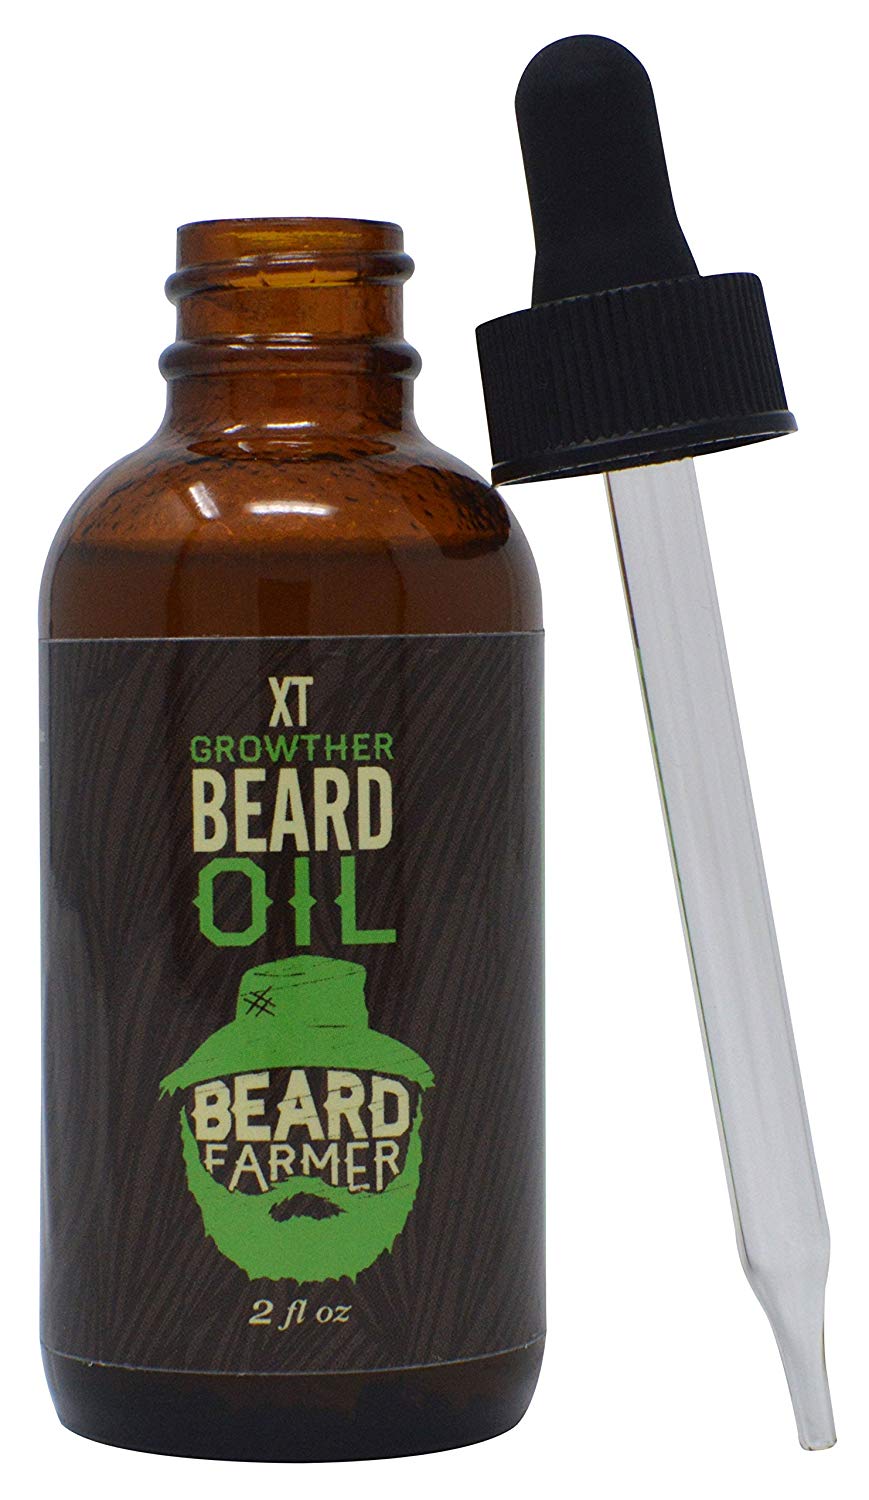 Beard Farmer - Growther XT Beard Oil (Extra Fast Beard Growth) All Natural Beard Growth Oil